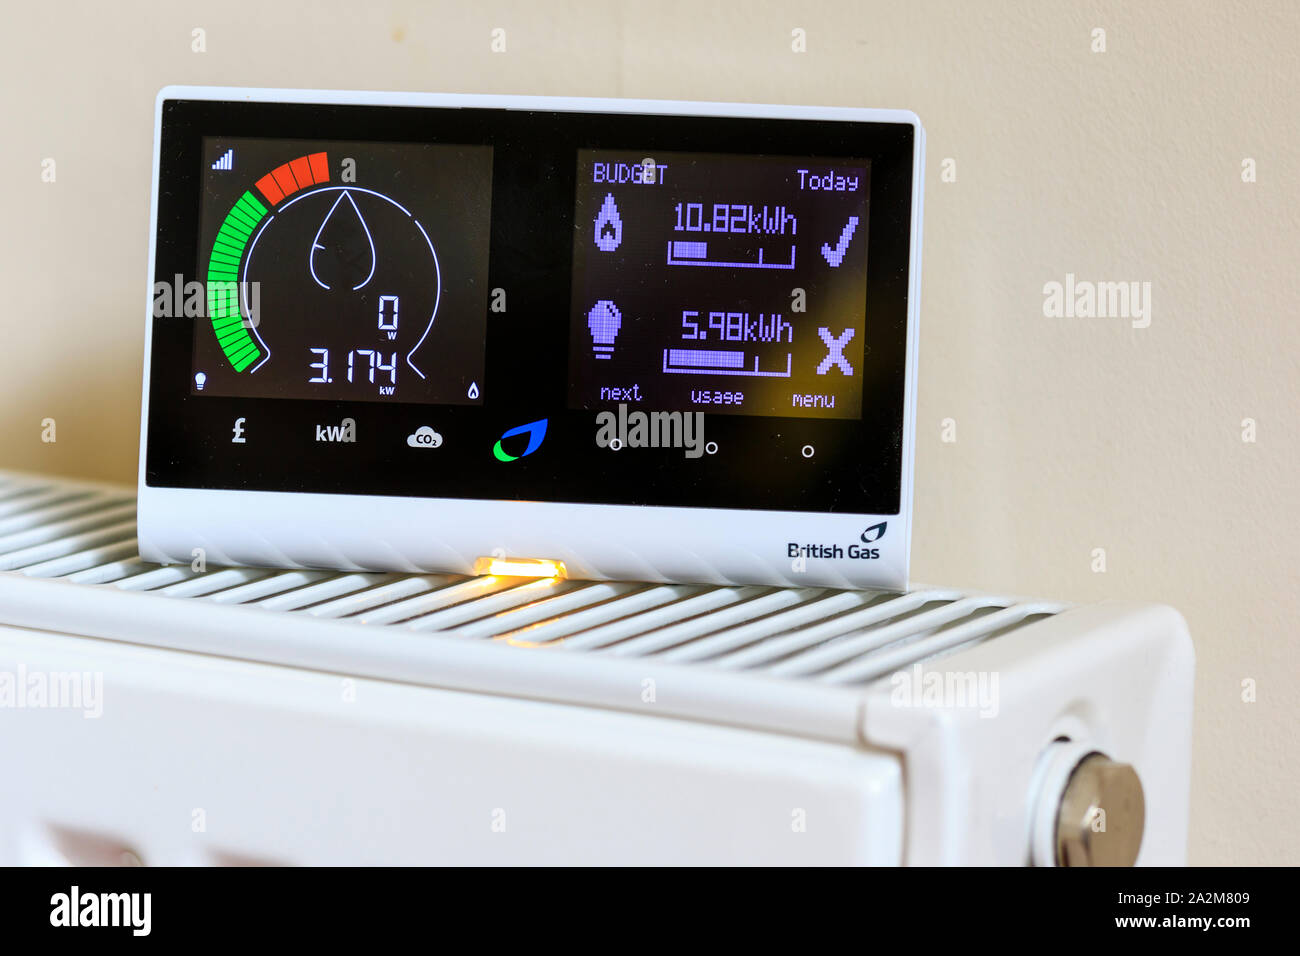 Famiglia British Gas smart meter sul radiatore elettrico del monitor e il consumo di gas con conseguente risparmio di denaro per i residenti. Mostra ad alto consumo energetico. Foto Stock